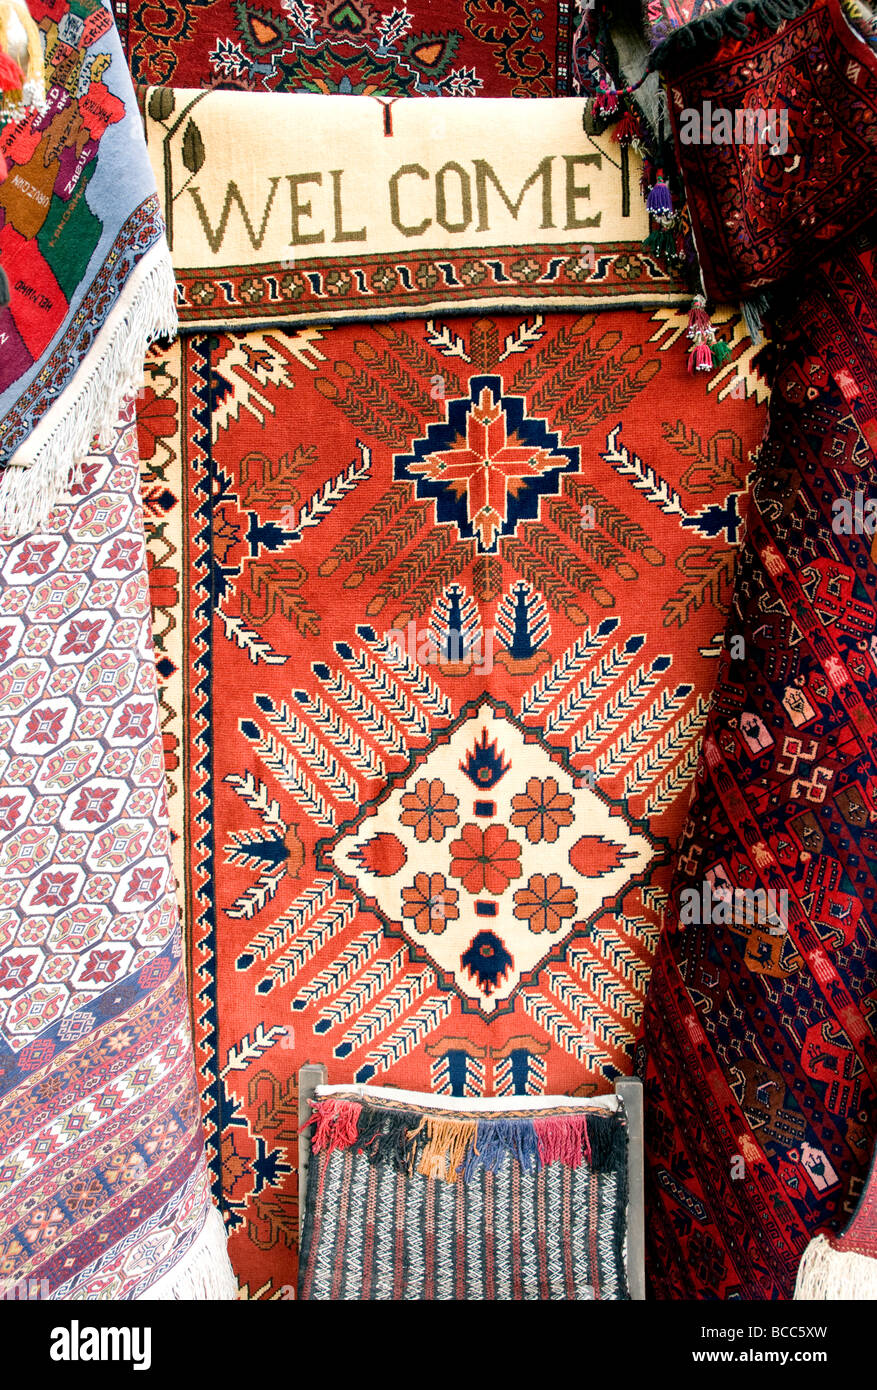 Una bienvenida motif trabajó en una alfombra en una tienda de alfombras en Kabul, Afganistán es conocida por sus largas alfombras de alta calidad Foto de stock